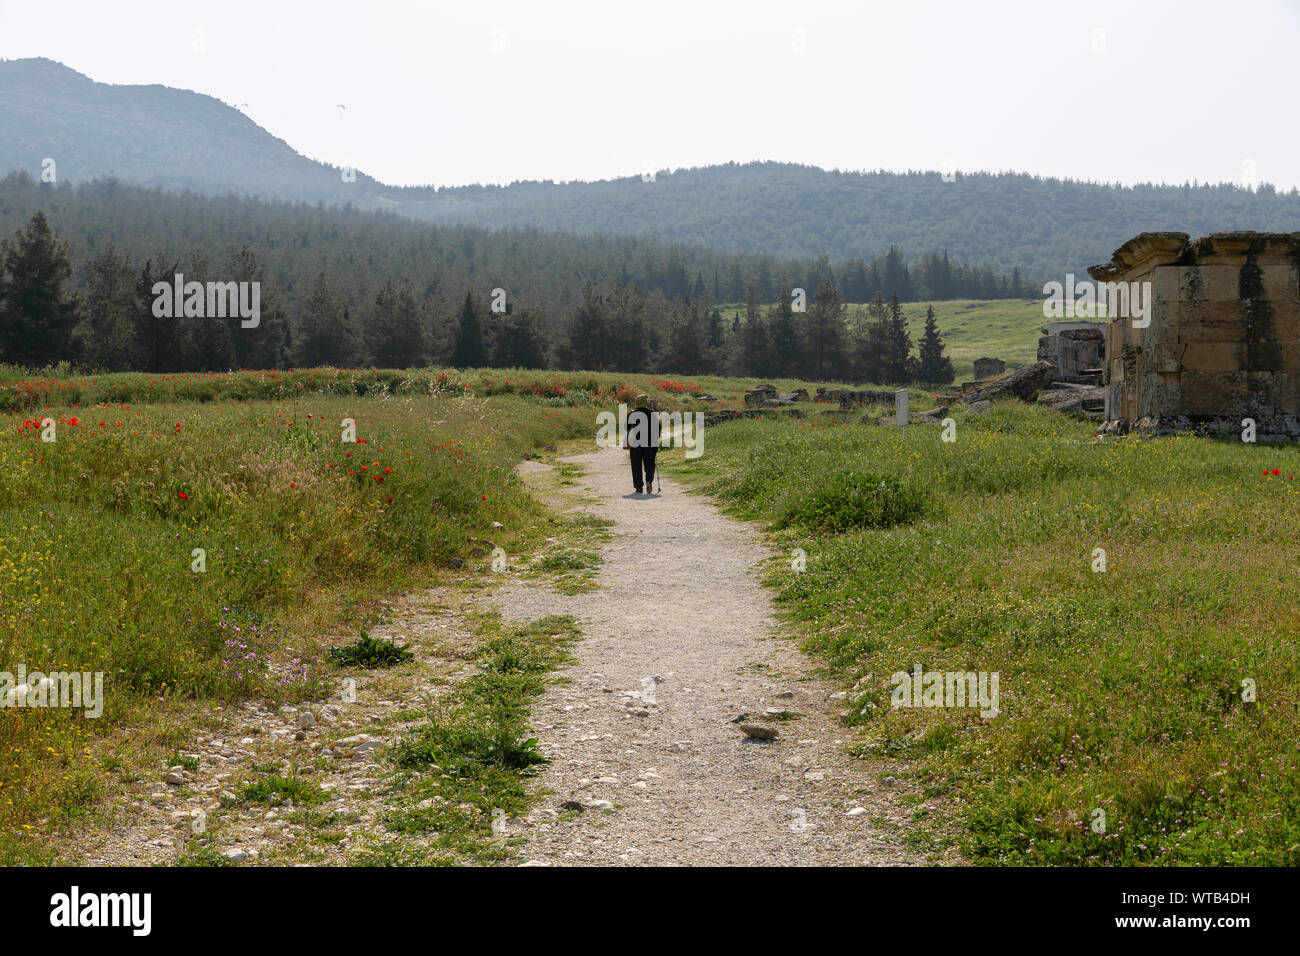 Route de terre en passant par les tombes de nécropole à château de coton au printemps - pamukkale - hierapolis -Turquie Banque D'Images